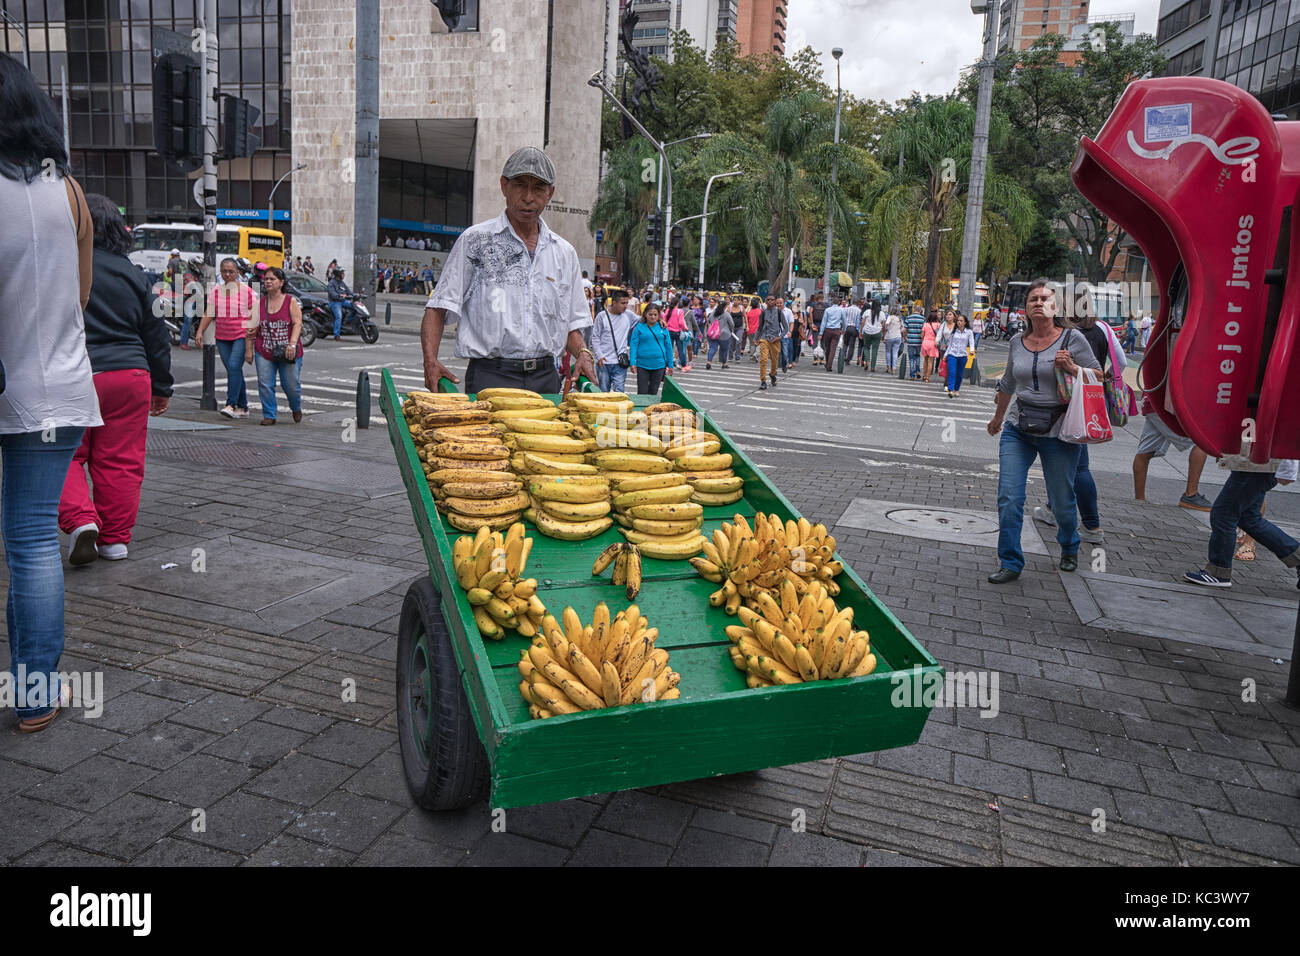 Septiembre 26, 2017 en Medellín, Colombia: un proveedor móvil venta de plátanos procedentes de un carro de madera con ruedas en el centro de la ciudad Foto de stock